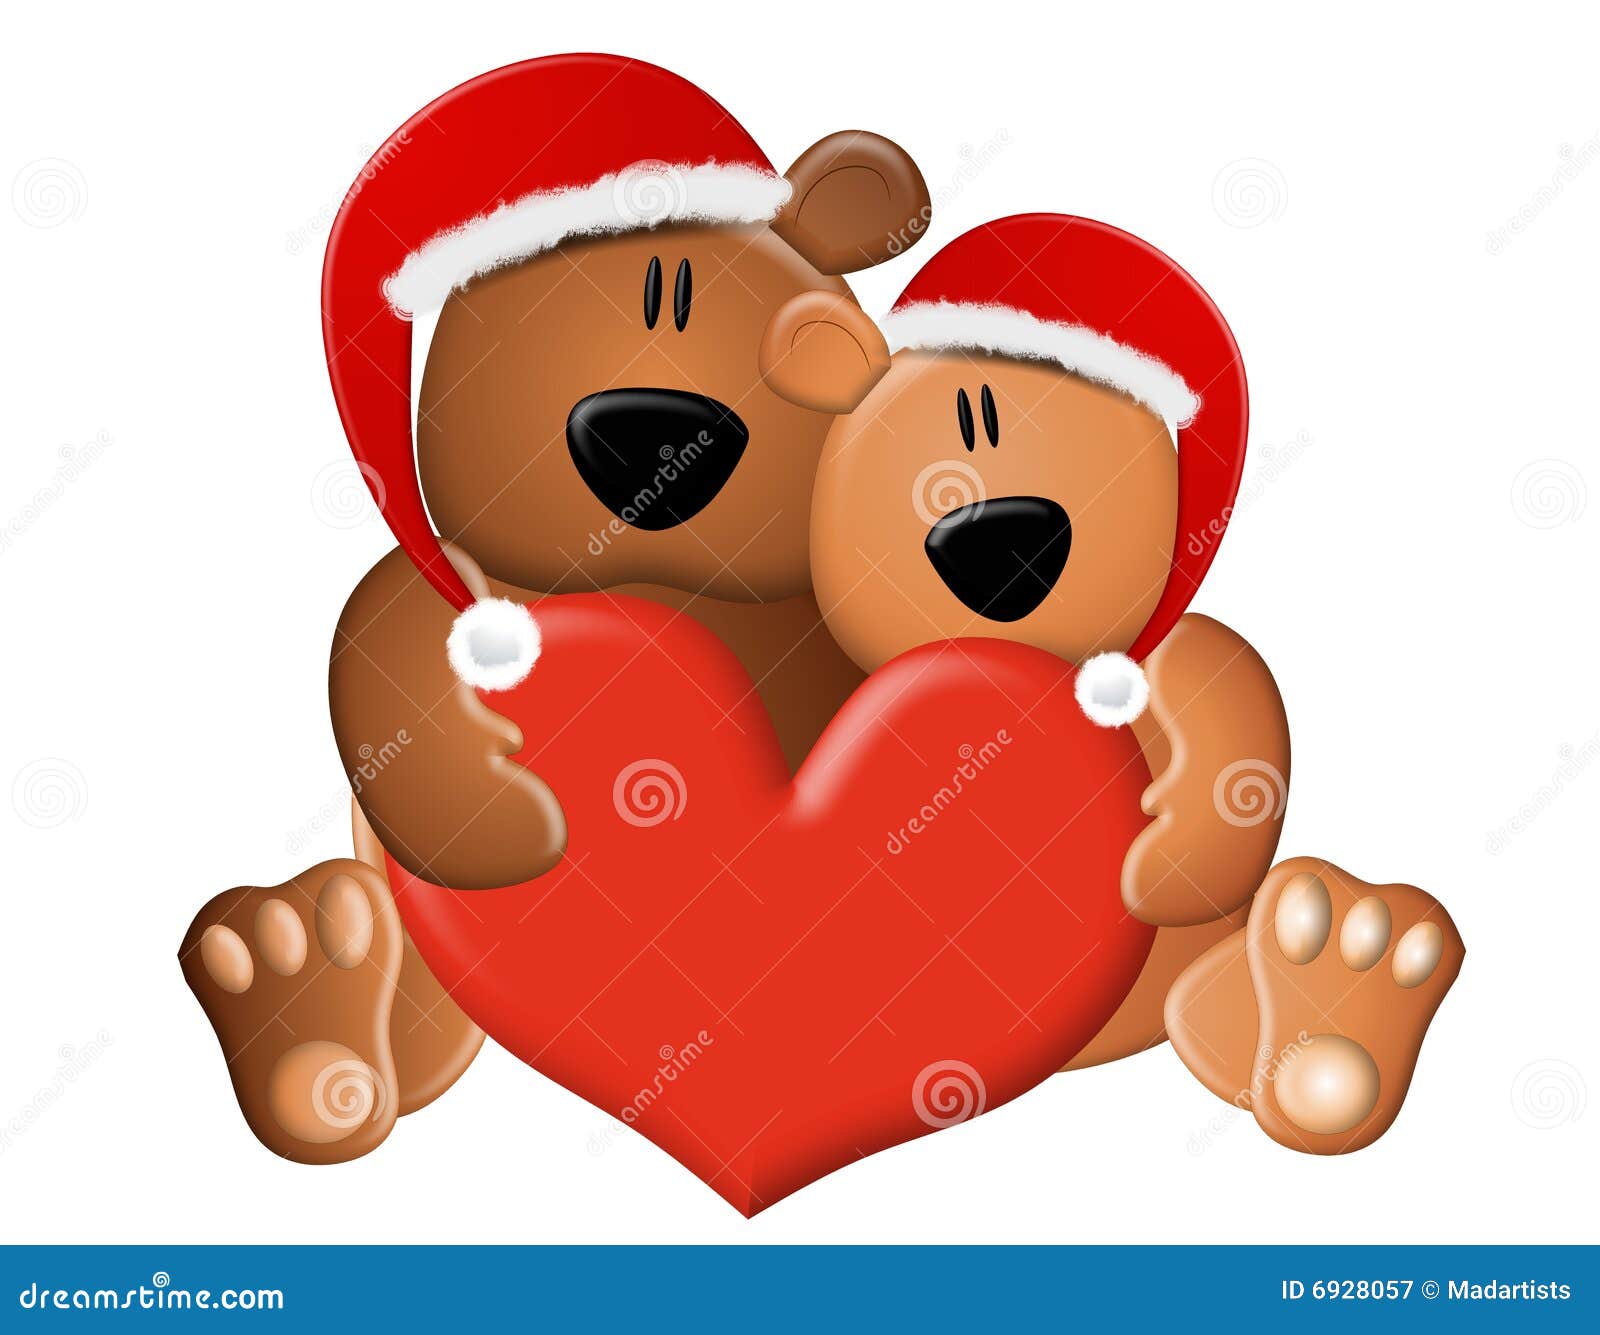 christmas teddy bear clip art free - photo #45